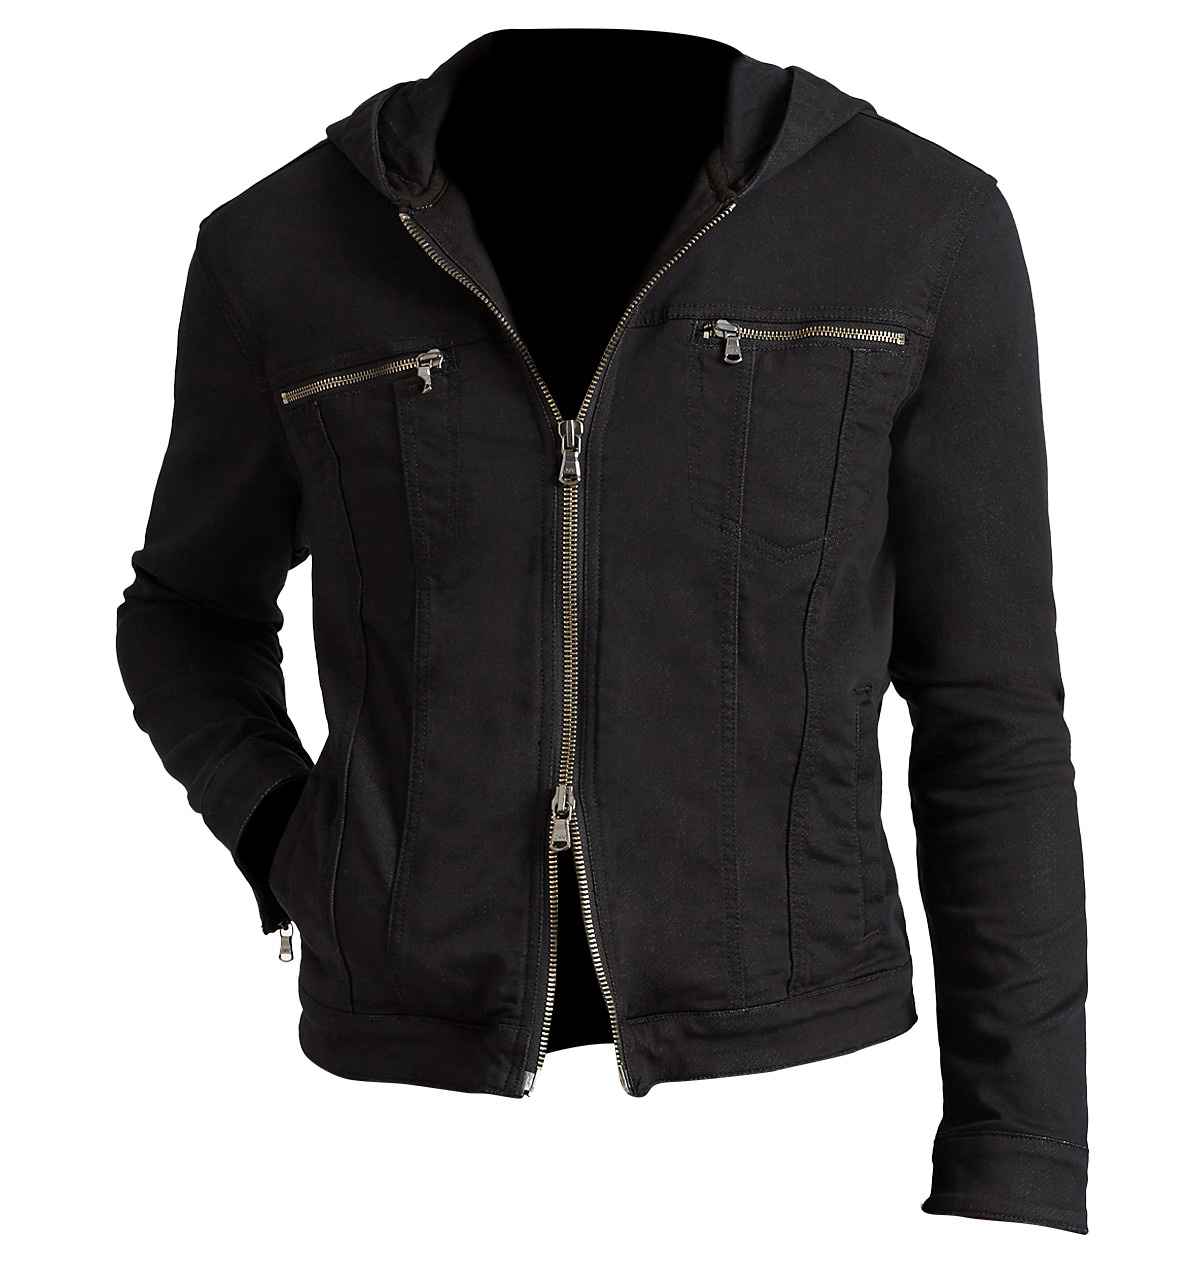 Clay Jensen Black Hoodie Cotton Jacket